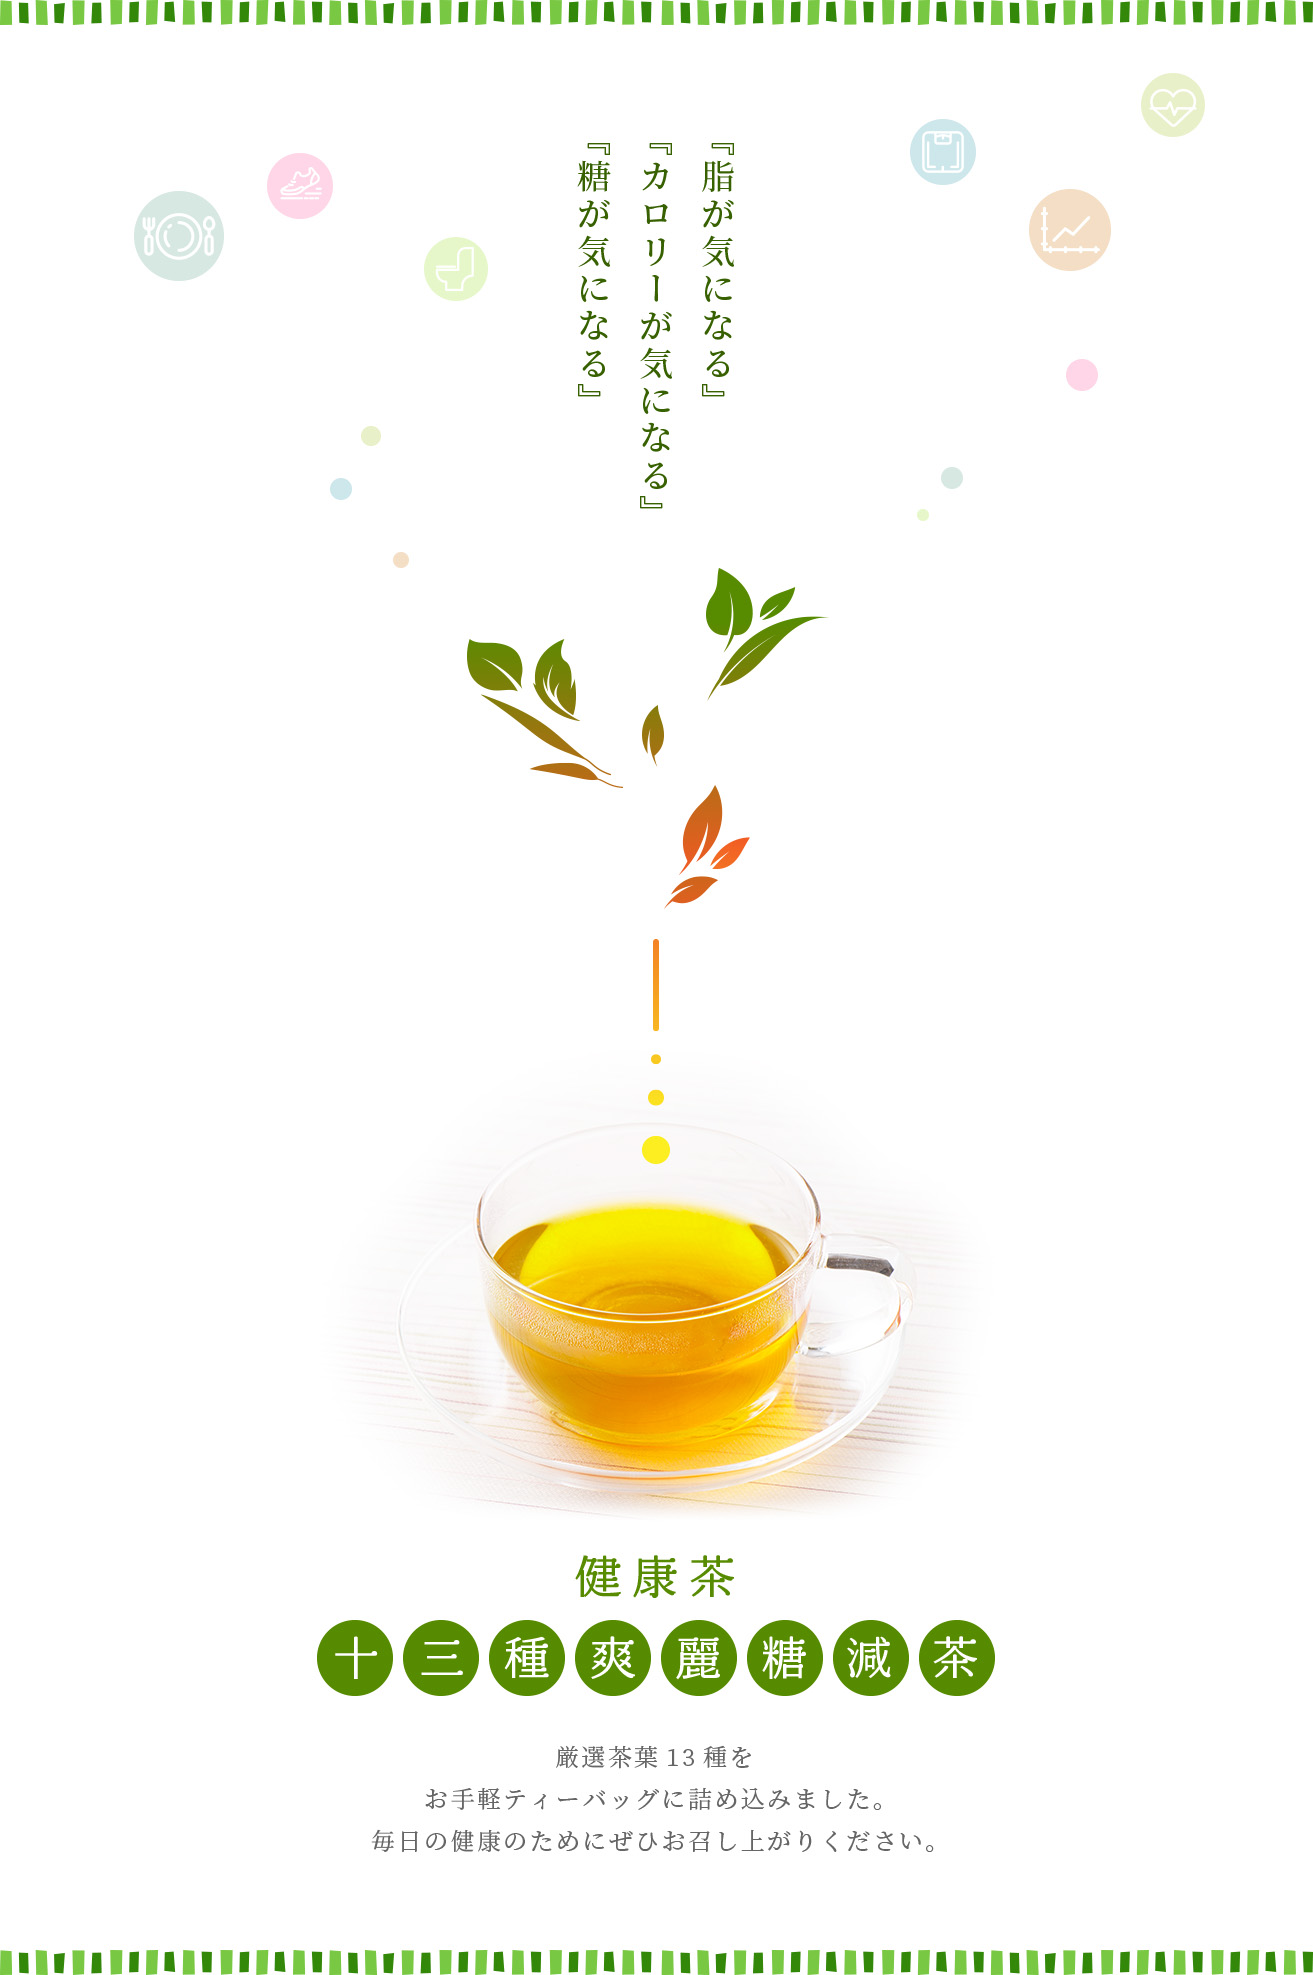 健康茶十三種爽麗糖減茶。毎日の健康のためにぜひお召し上がり下さい。